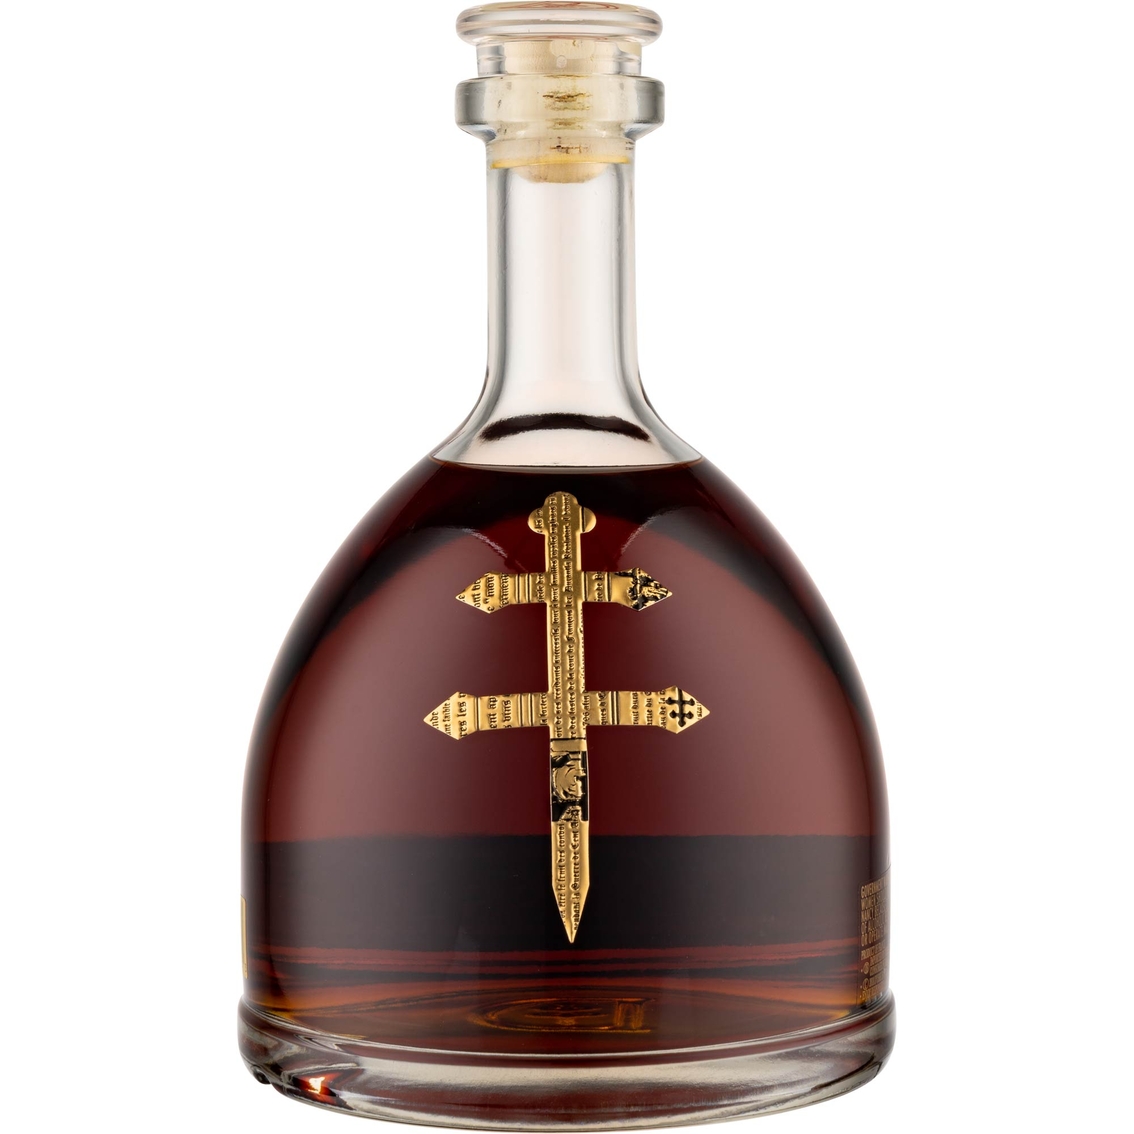 D'USSÉ VSOP Cognac 750ml - Image 2 of 2